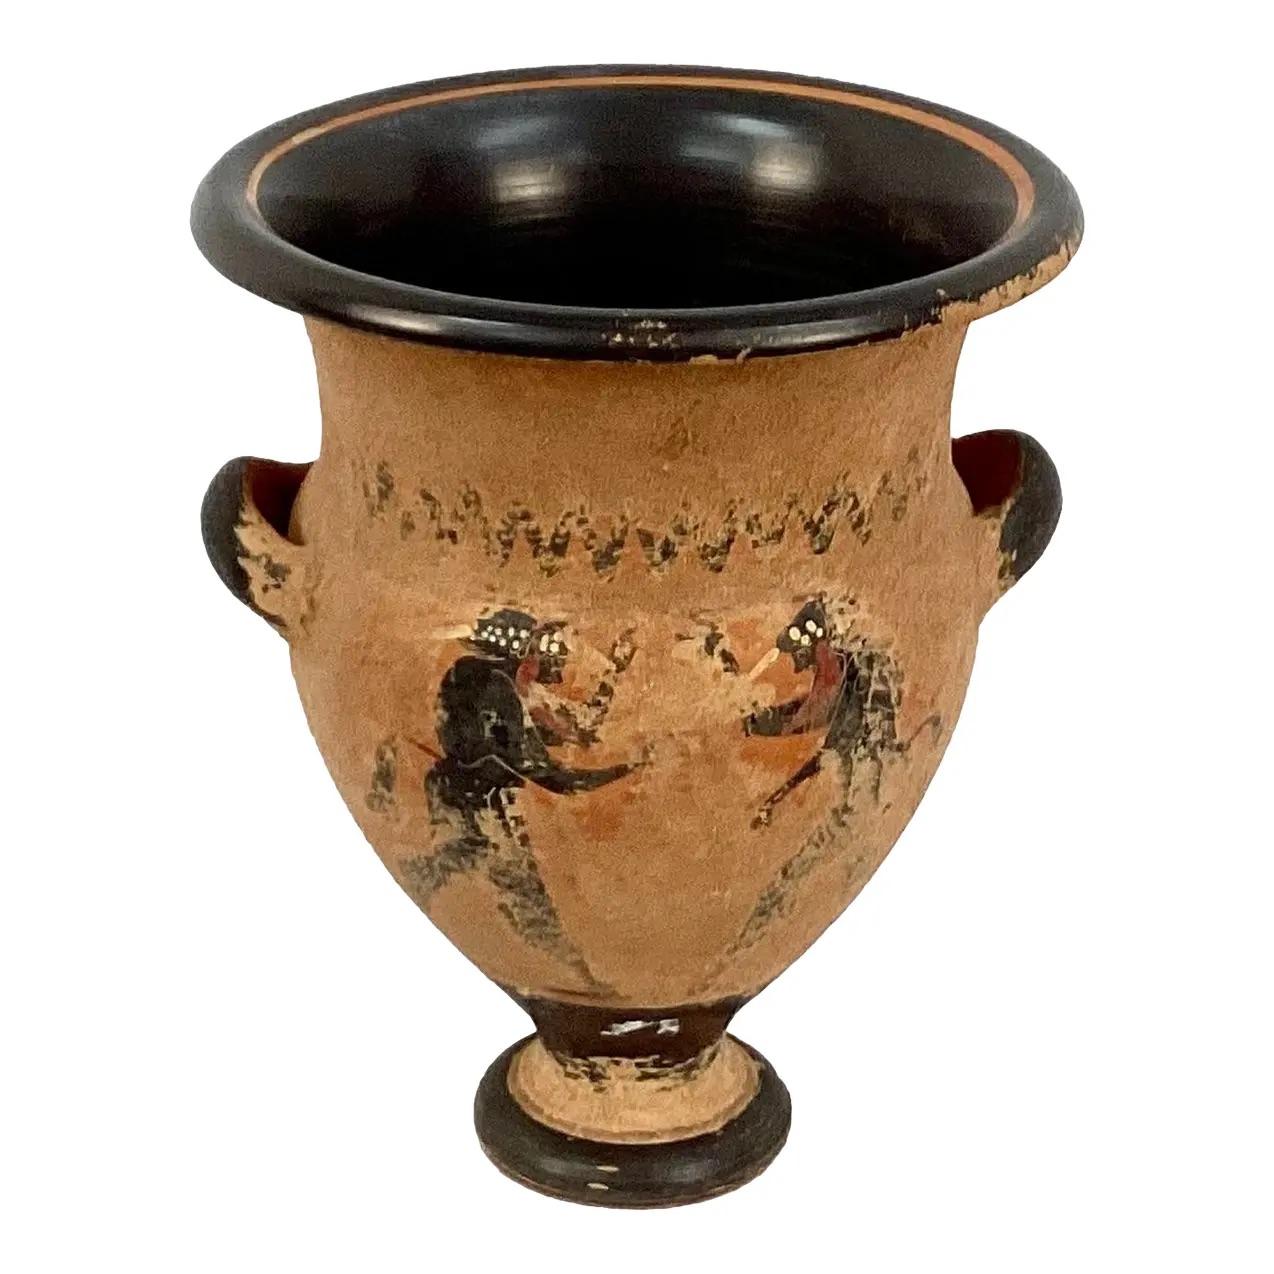 Terrakotta-Gefäß im Grand-Tour-Stil des späten 19. Jahrhunderts, verziert mit griechischen Figuren in Form einer Amphora, zwei Henkel am Hals. Handbemalt. 

Abmessungen:
8,5 